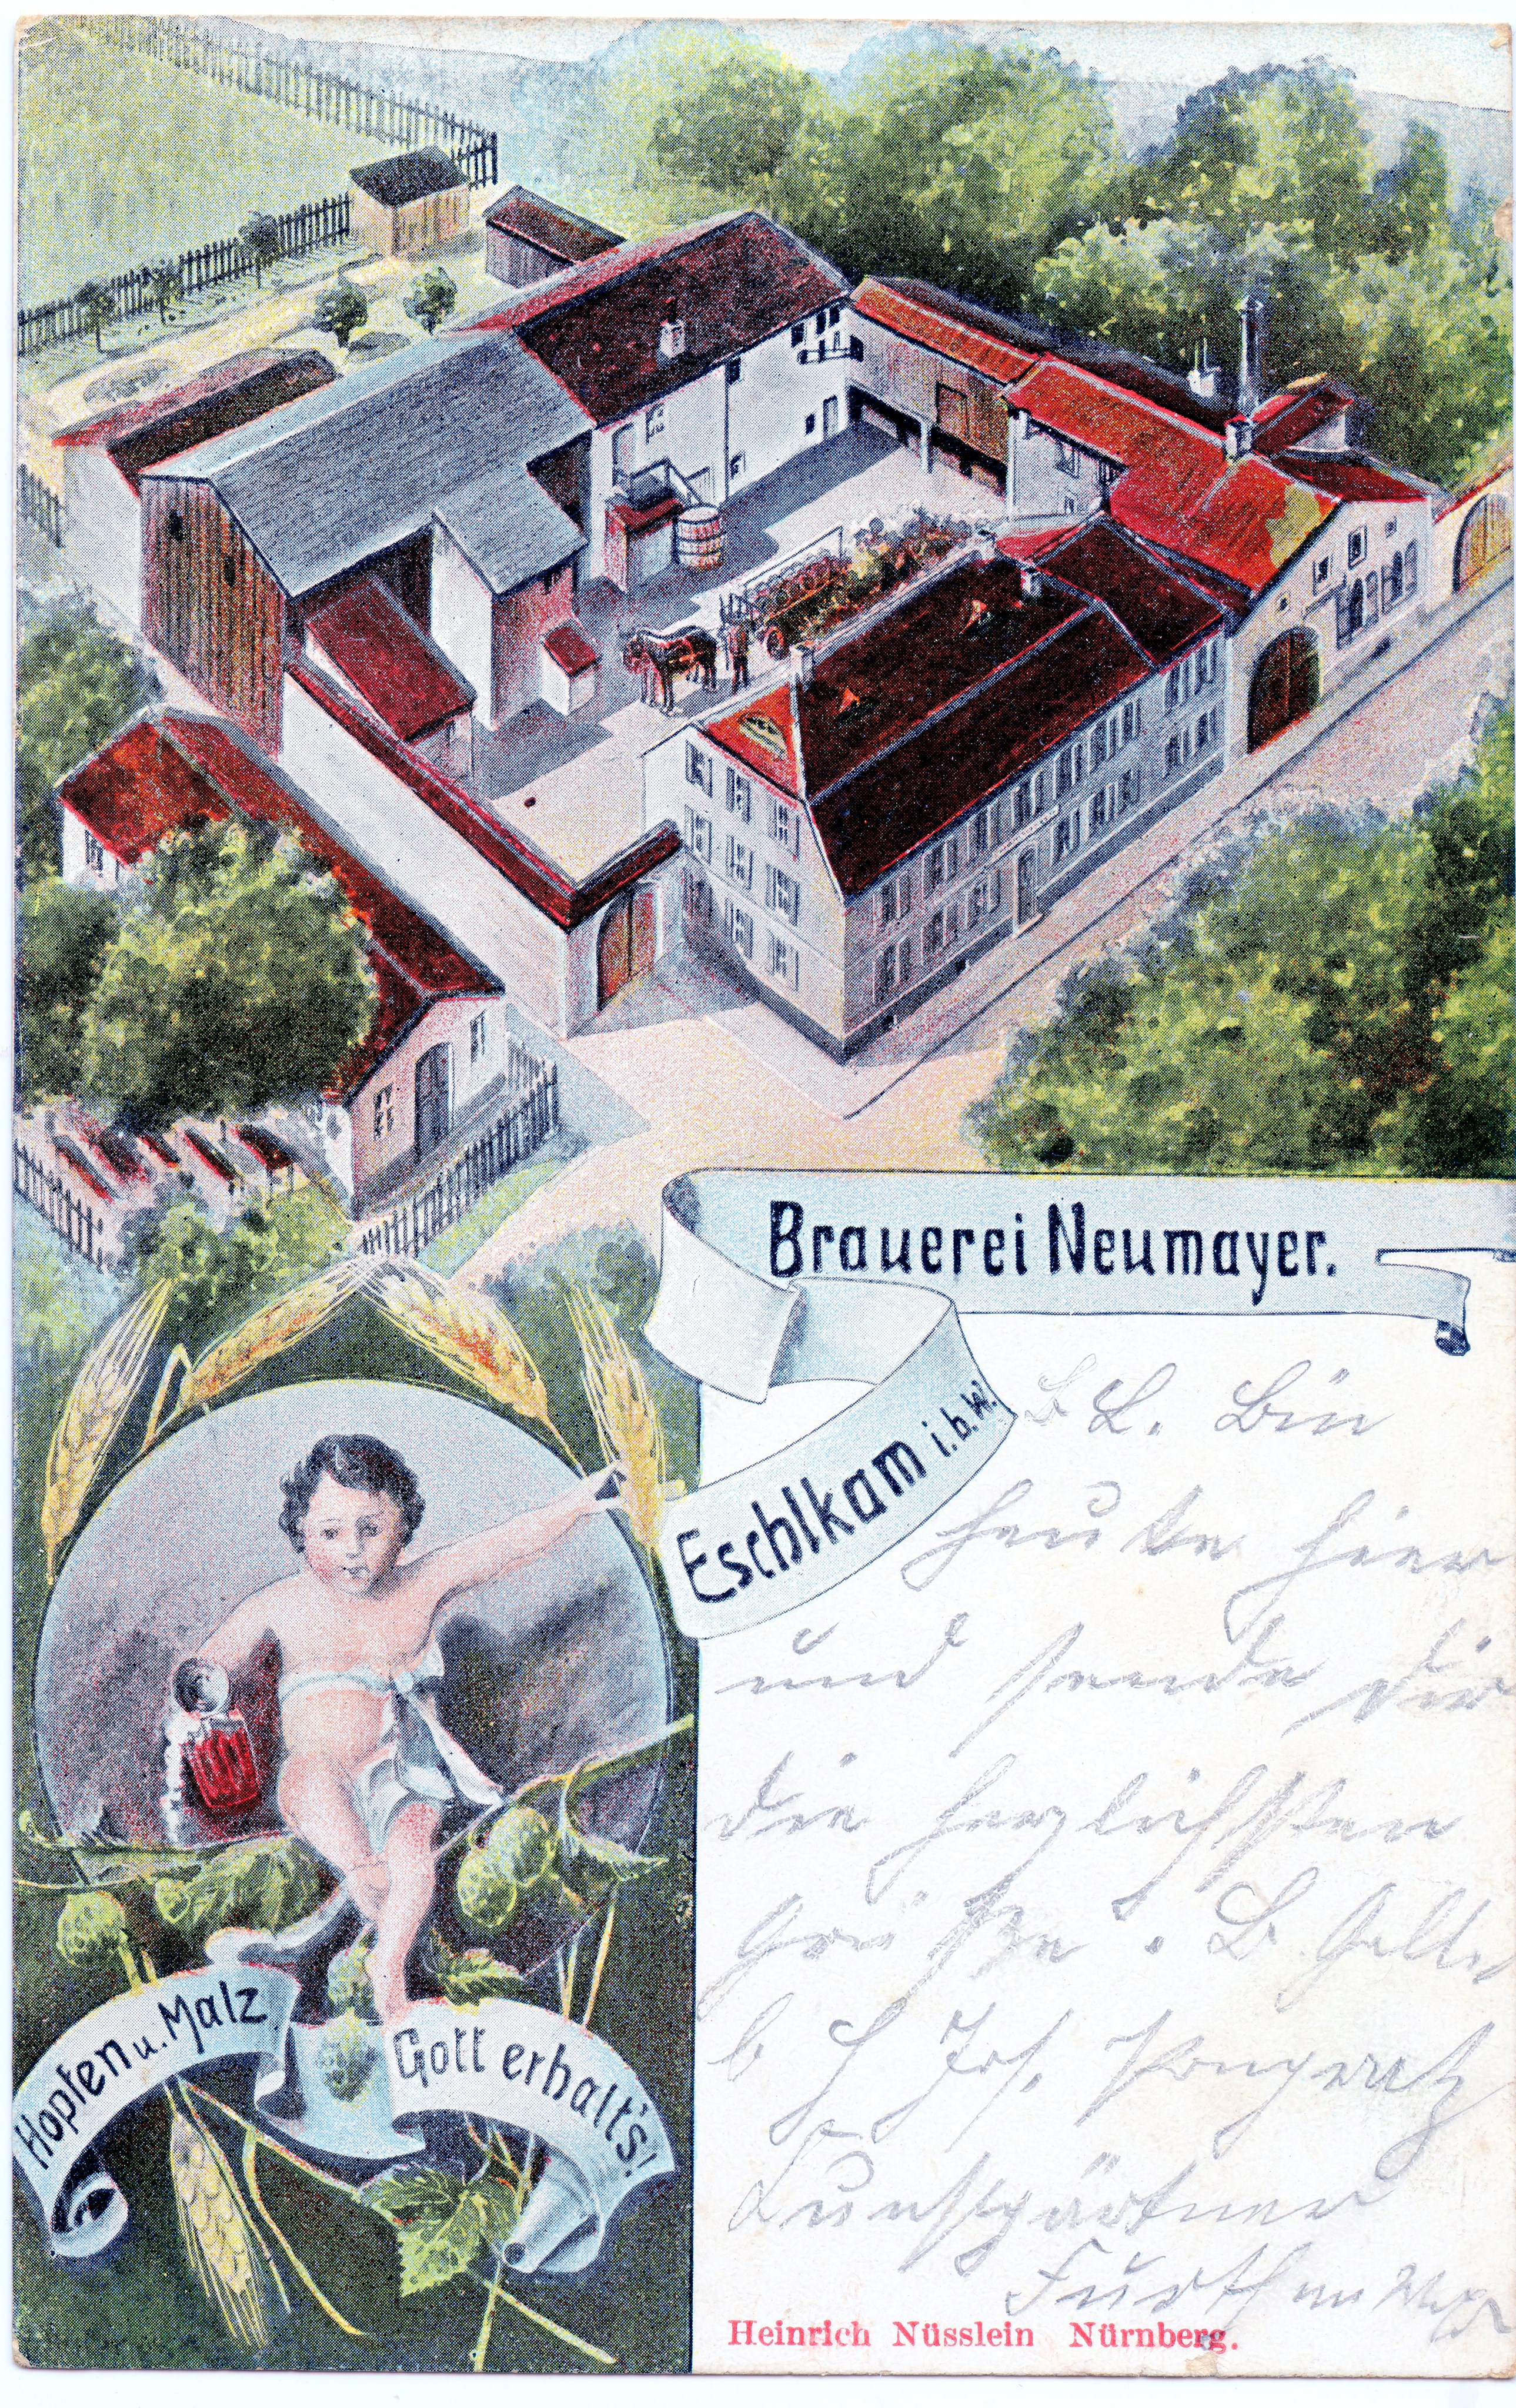 Verlag Heinrich Nüsslein Nürnberg